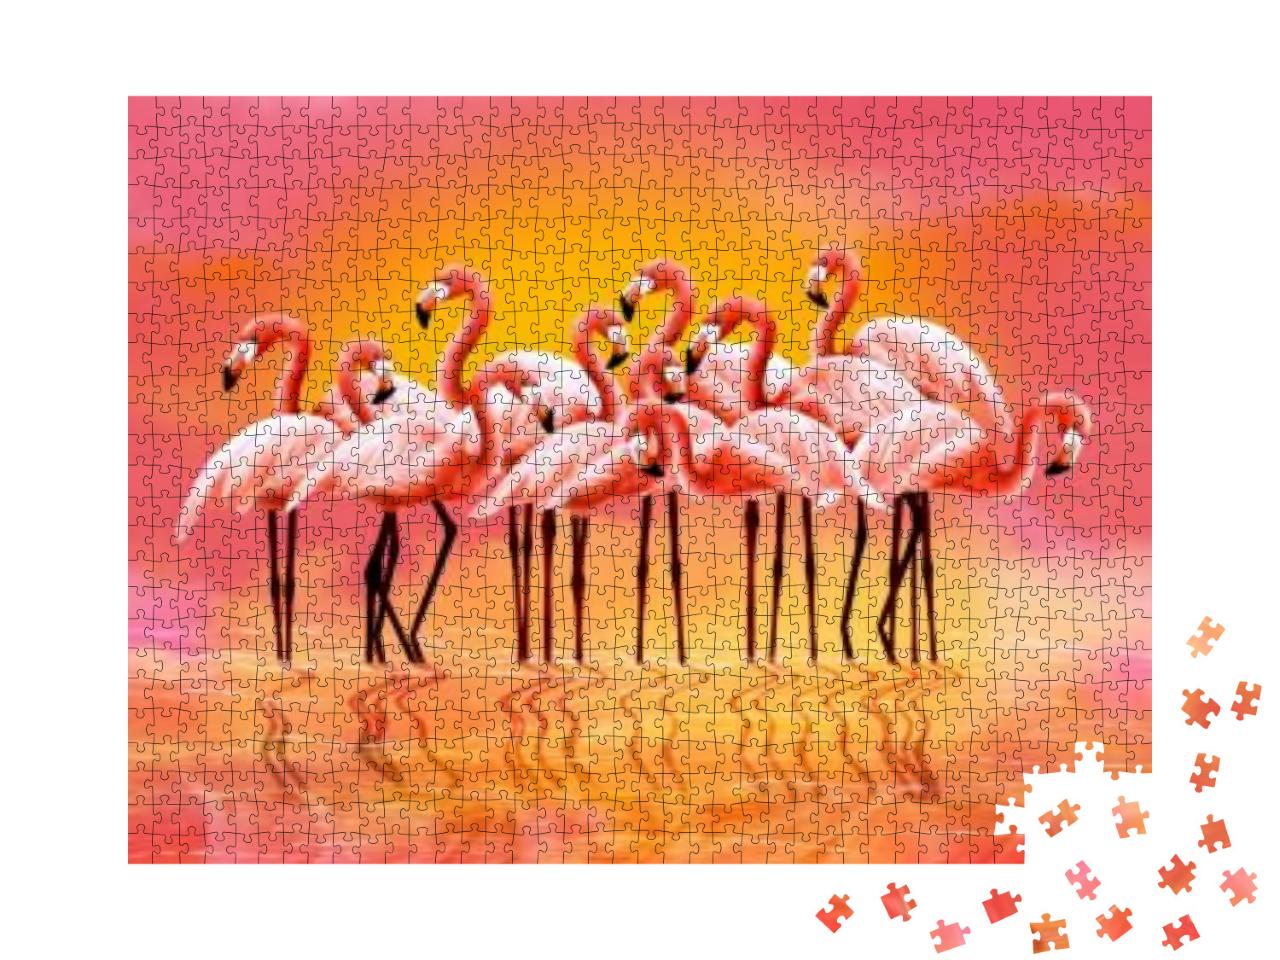 Puzzle 1000 Teile „Digitale Illustration: Panorama von rosa Flamingos“